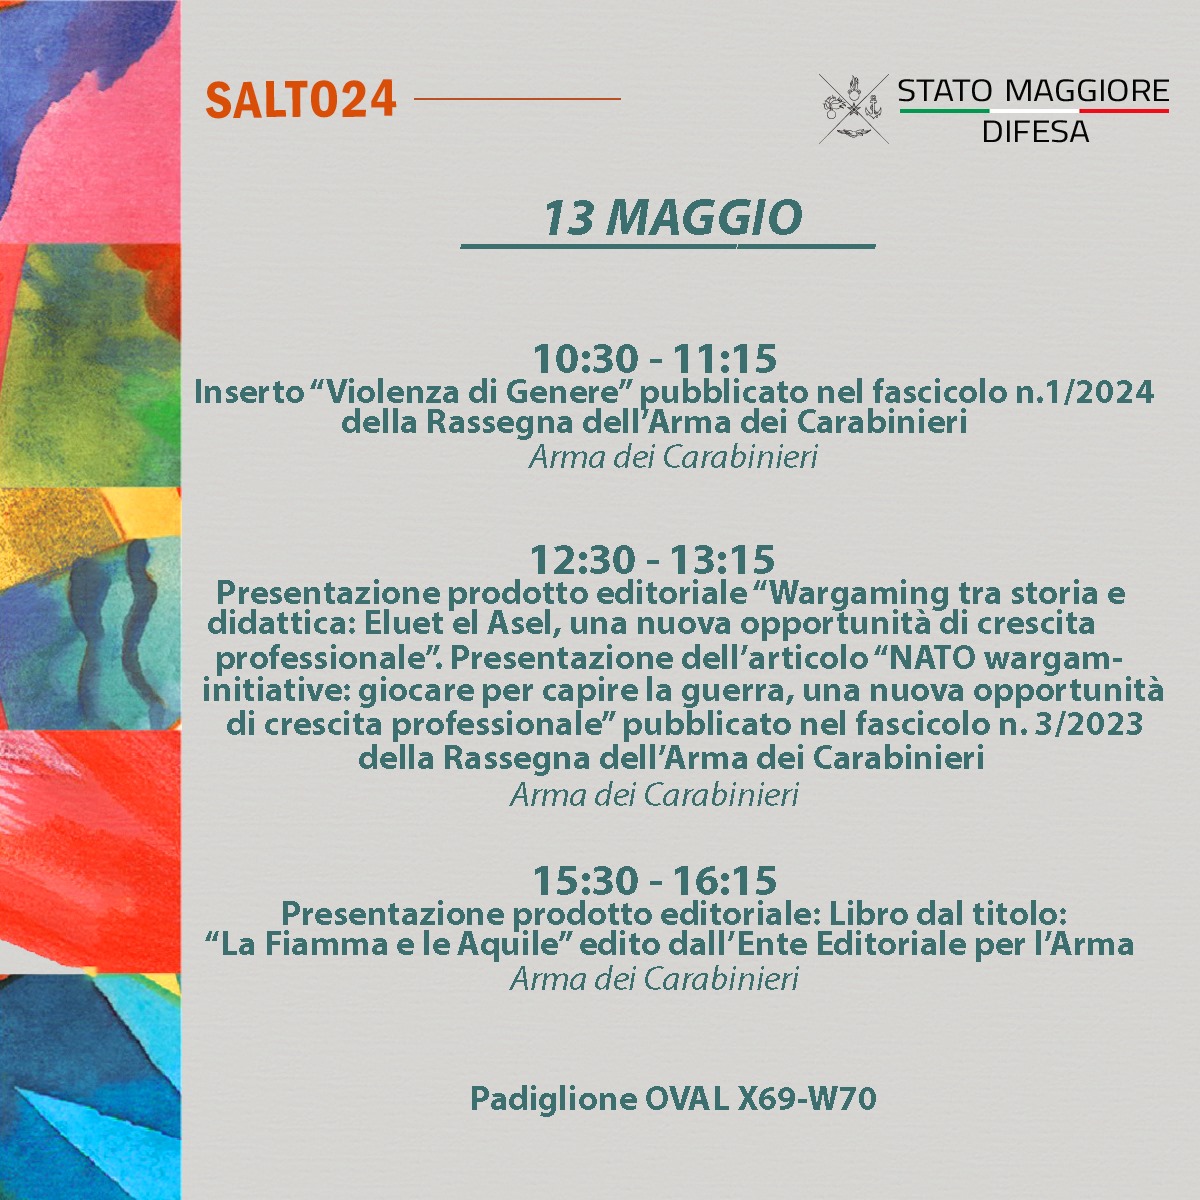 #SalTo24 Ultima giornata delle #ForzeArmate🇮🇹 al 36° #SalonedelLibro di Torino. Anche oggi sarà una giornata ricca di eventi e presentazioni. Ti aspettiamo al padiglione Oval stand W70 ➡ bit.ly/ForzeArmate-sa… #UnaForzaperilPaese